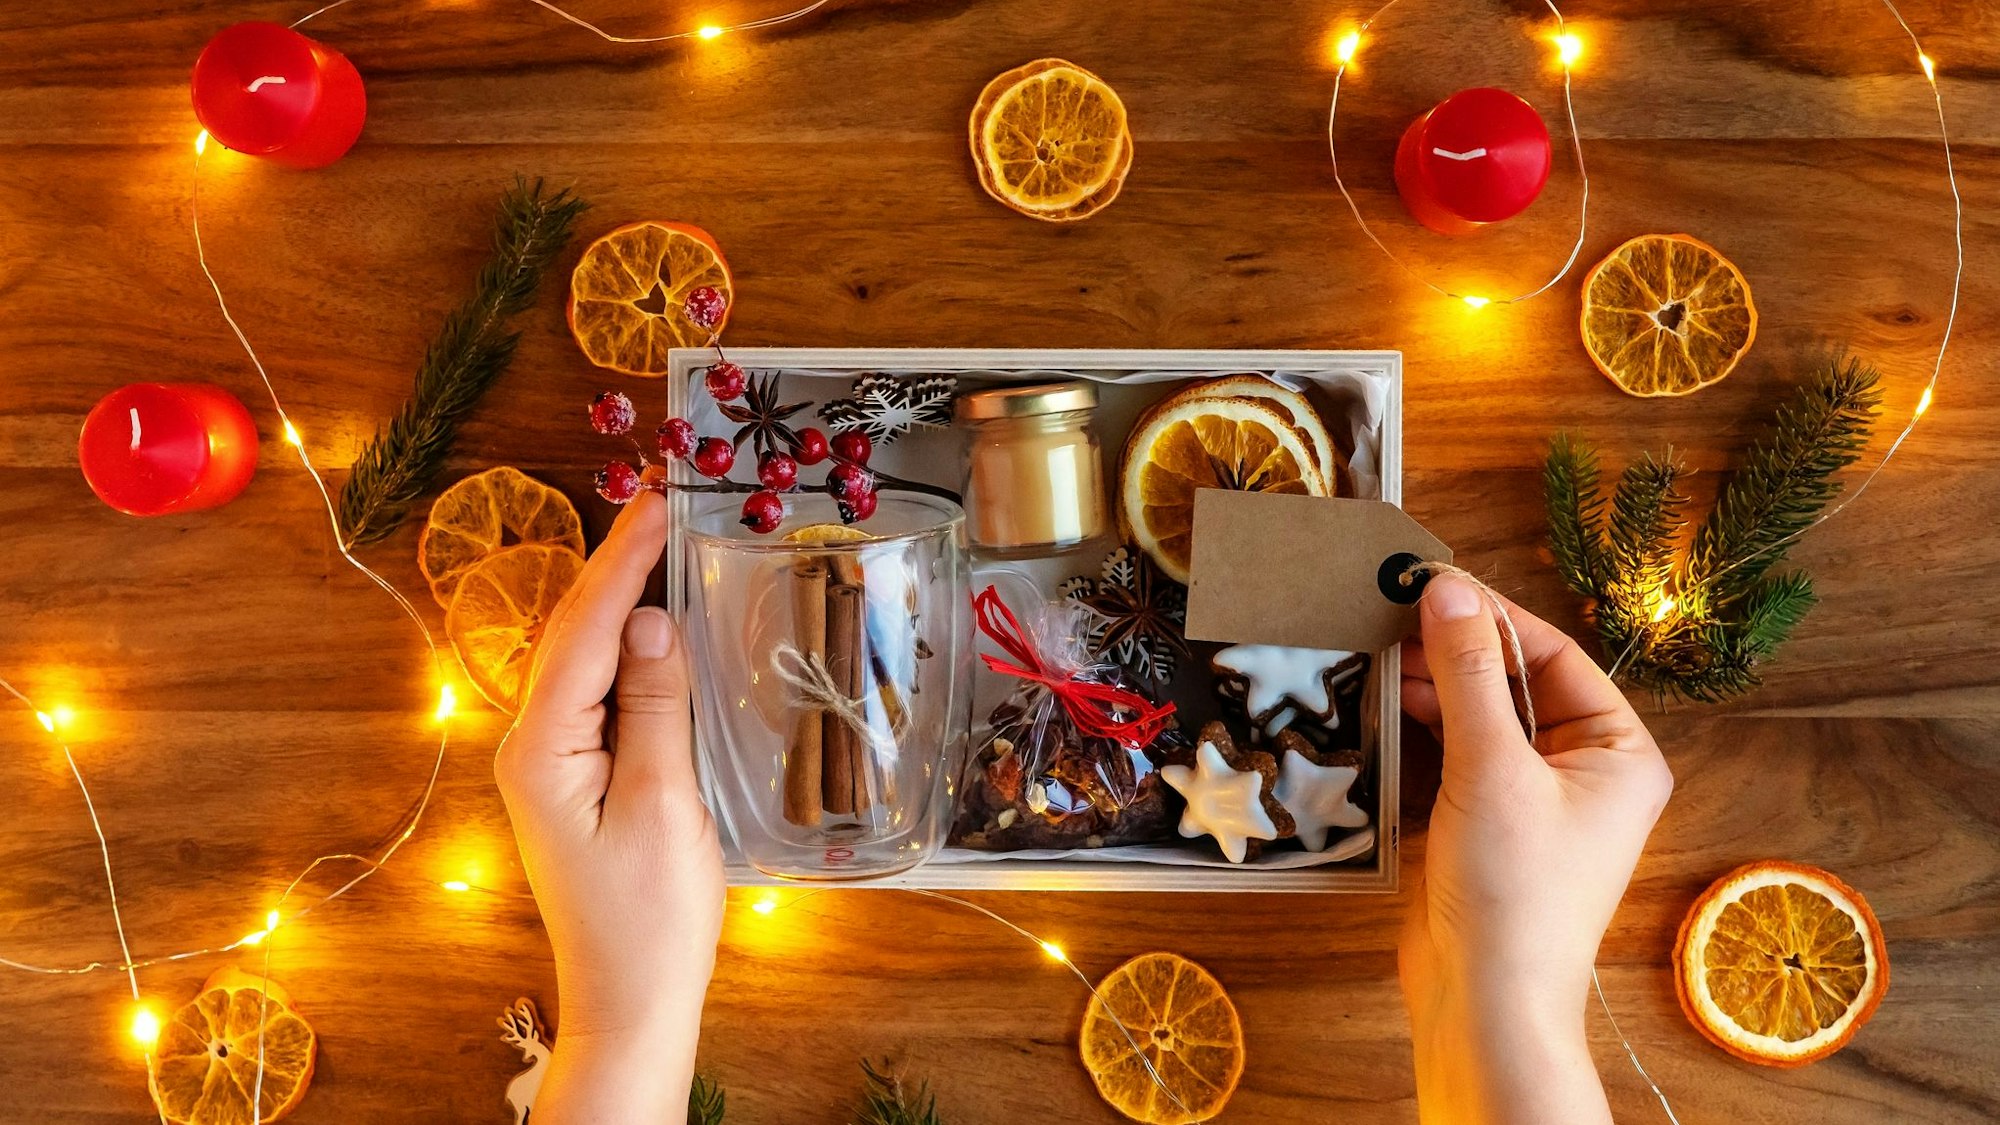 Auf dem Foto sieht man eine kleine Geschenkbox mit Orangenschalen, Keksen und Zimtstangen u.ä. darin.